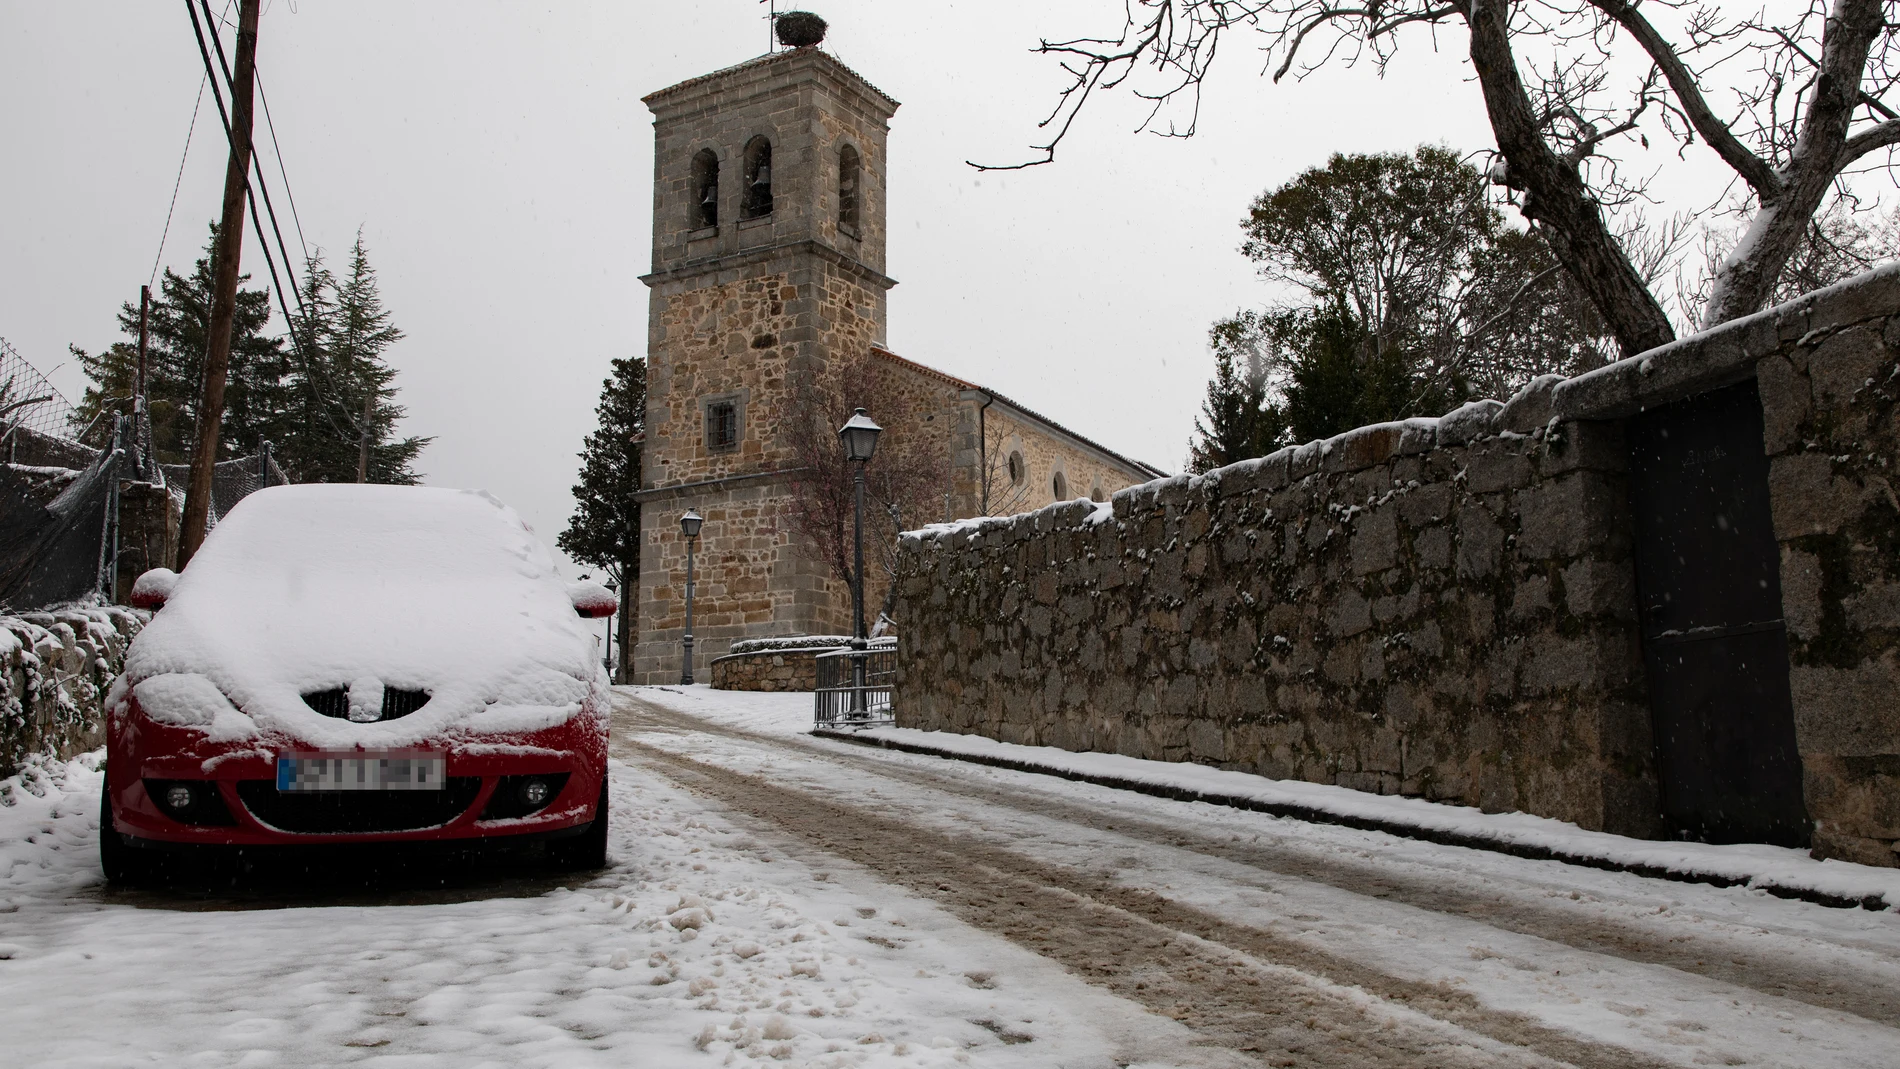 Un coche cubierto de nieve, a 3 de marzo de 2024, en Navacerrada, Madrid (España). La Agencia Estatal de Meteorología (AEMET) mantiene el aviso amarillo activado ayer, 2 de marzo, en la Comunidad de Madrid ante la posibilidad de acumulación de cinco centímetros de nieve en la Sierra. Se esperan acumulaciones de nieve en 24 horas de hasta 5 centímetros por encima de los 1.200 metros. La cota de nieve ascenderá durante el día de 700 metros al principio de la jornada hasta los 1.100 y 1.200 metr...